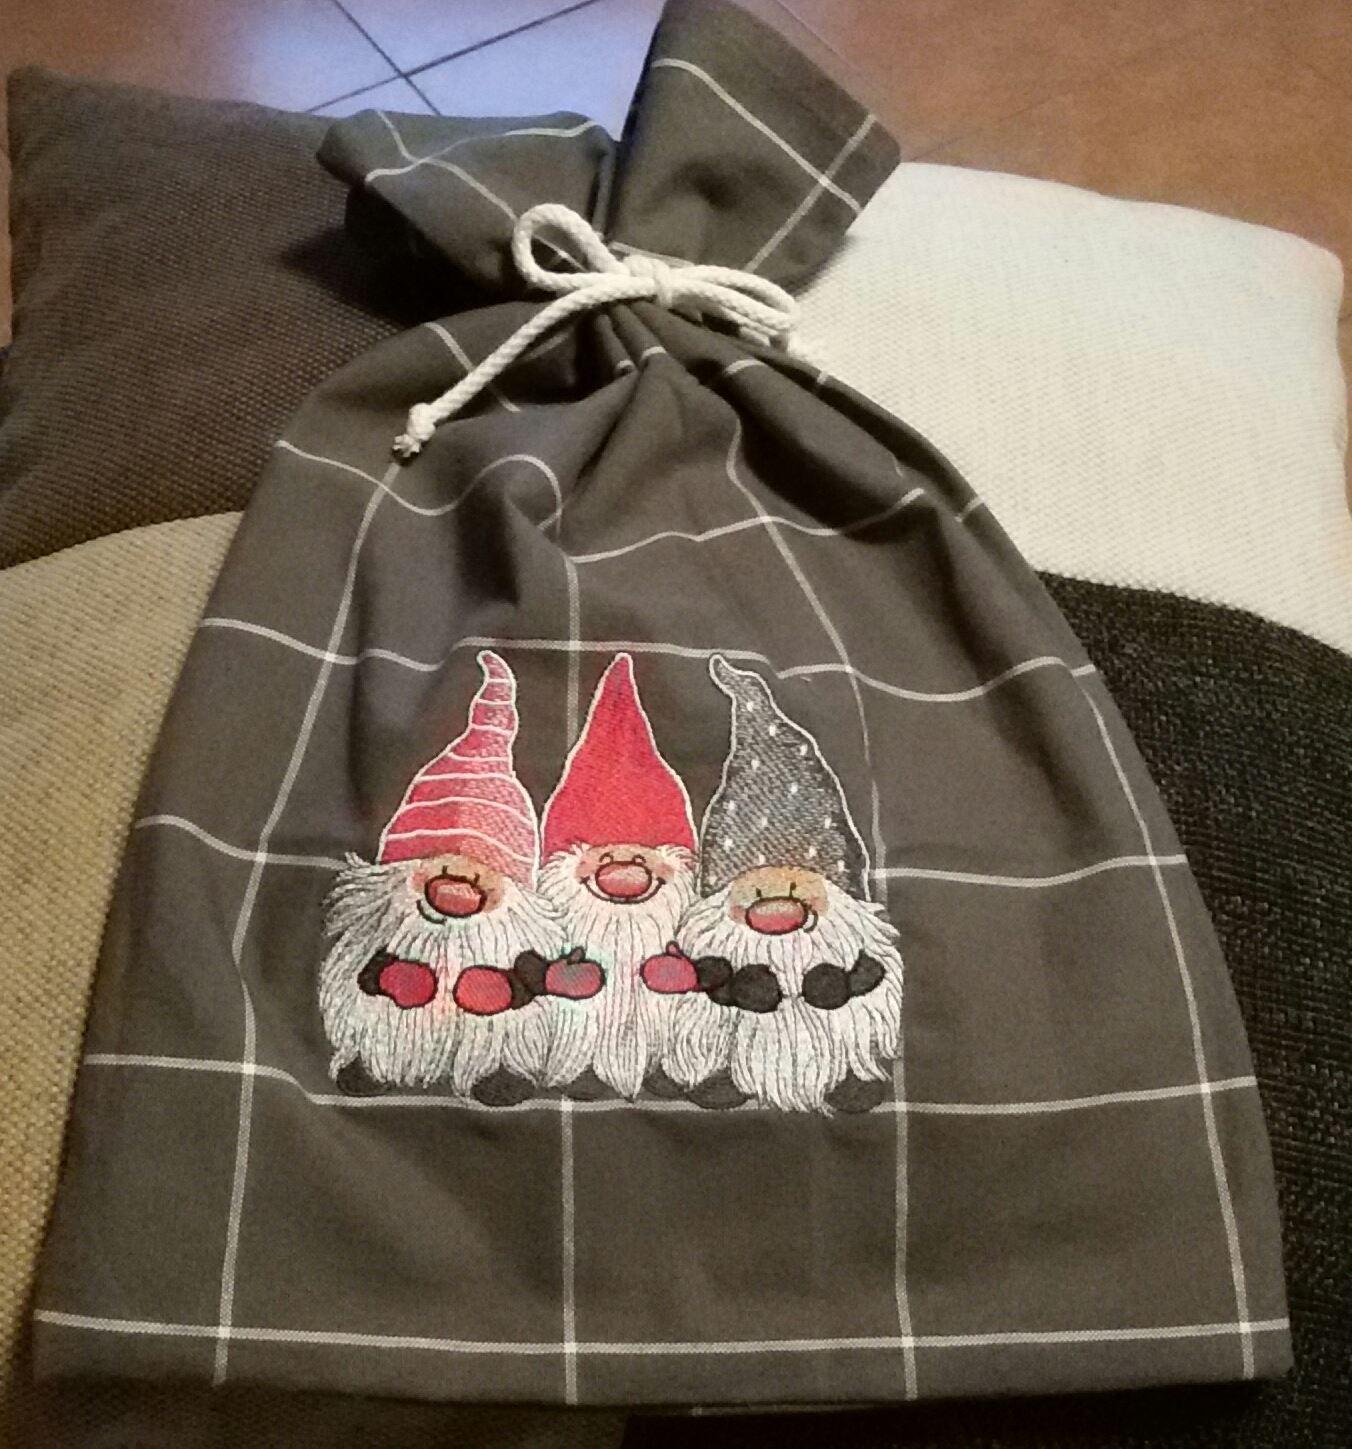 Embroidered bag with Dwarves design